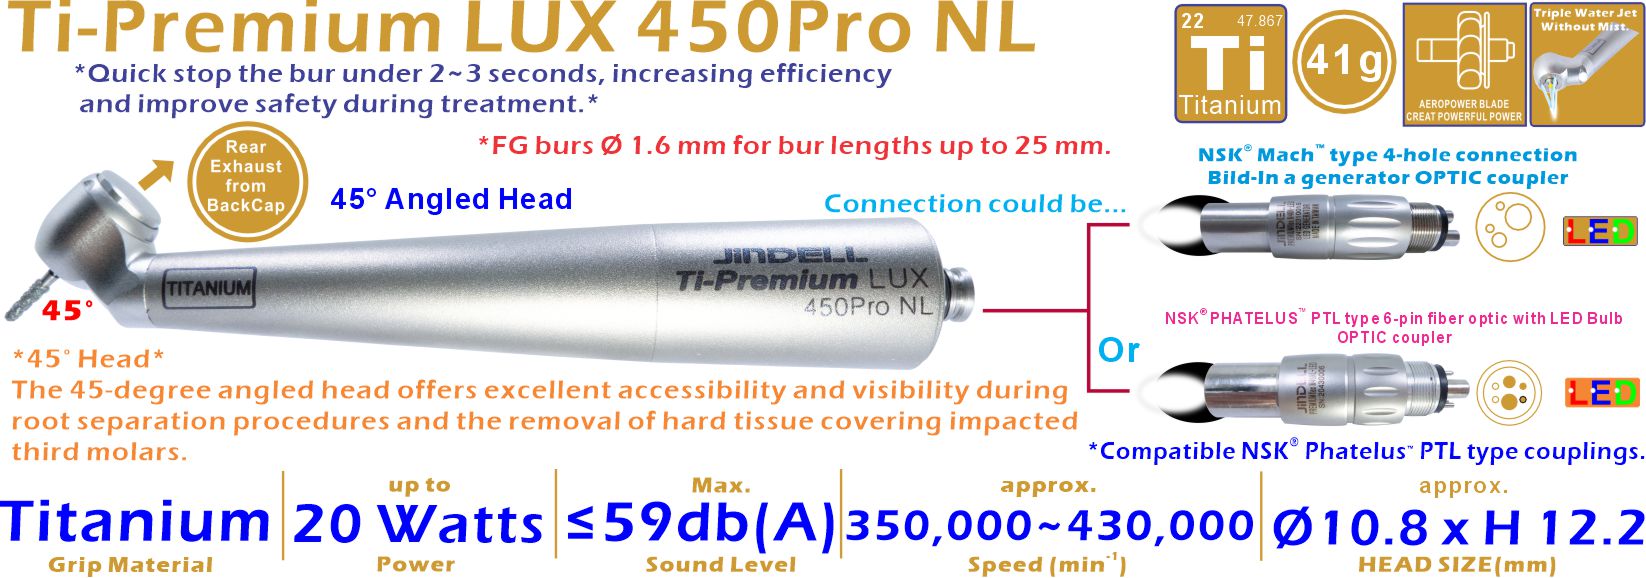 Ti-Premium LUX 450Pro NL-Detail